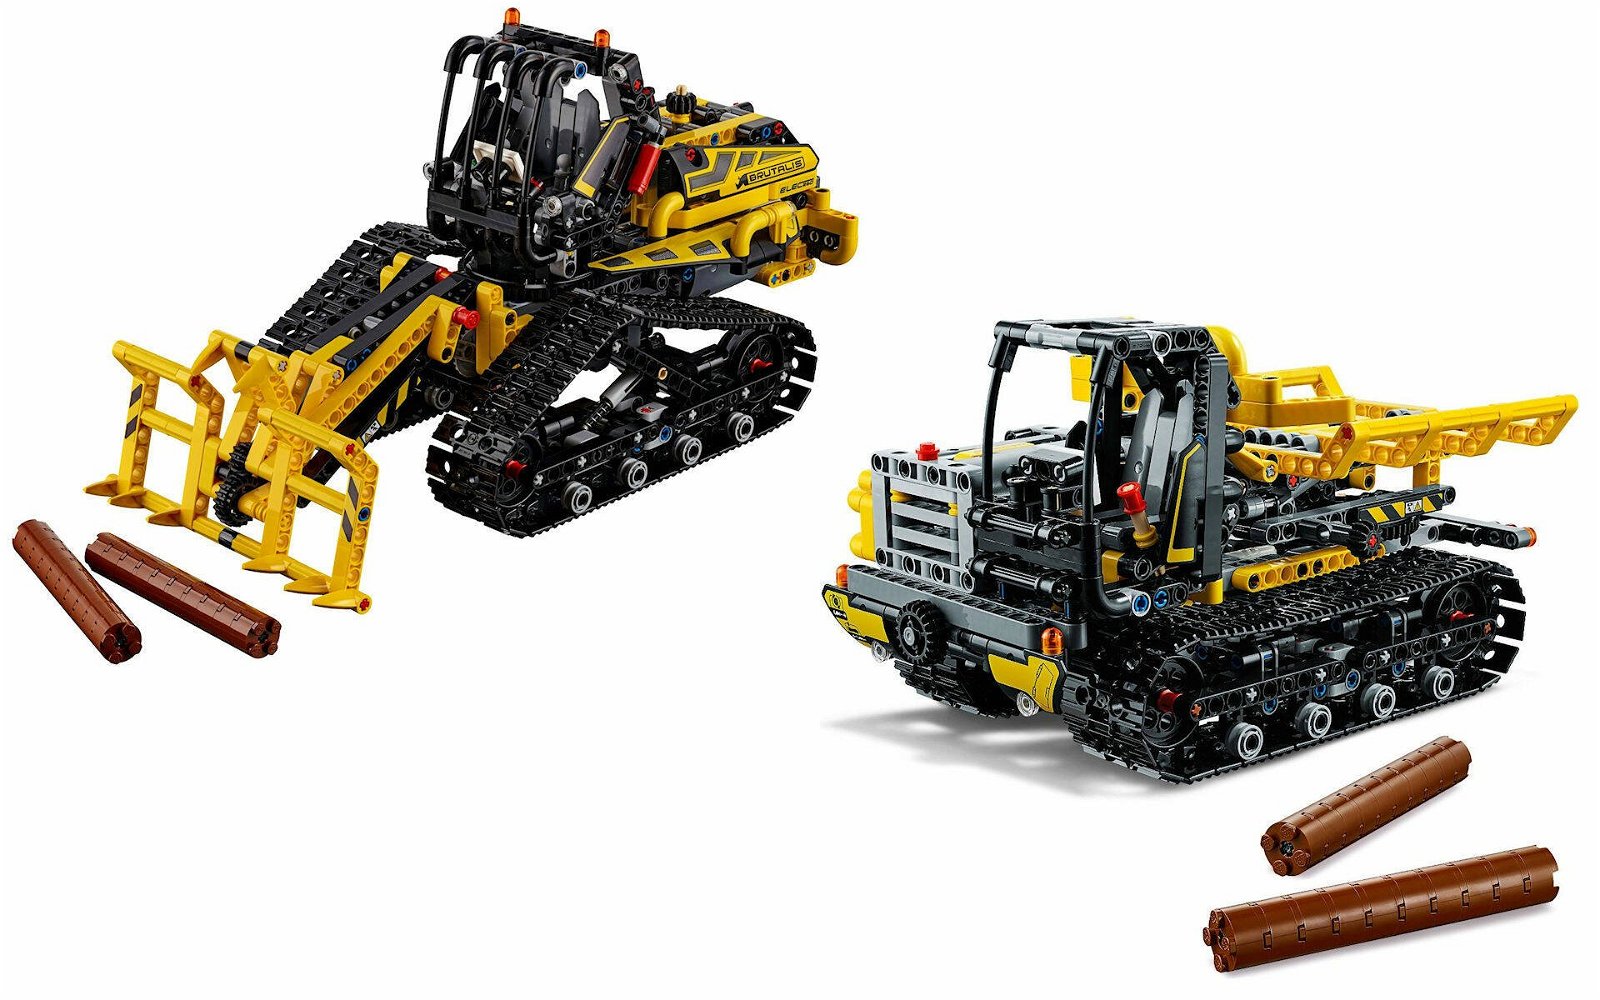 Immagine di LEGO MANIA. Costruiamo insieme il set LEGO Technic #42094 Ruspa cingolata